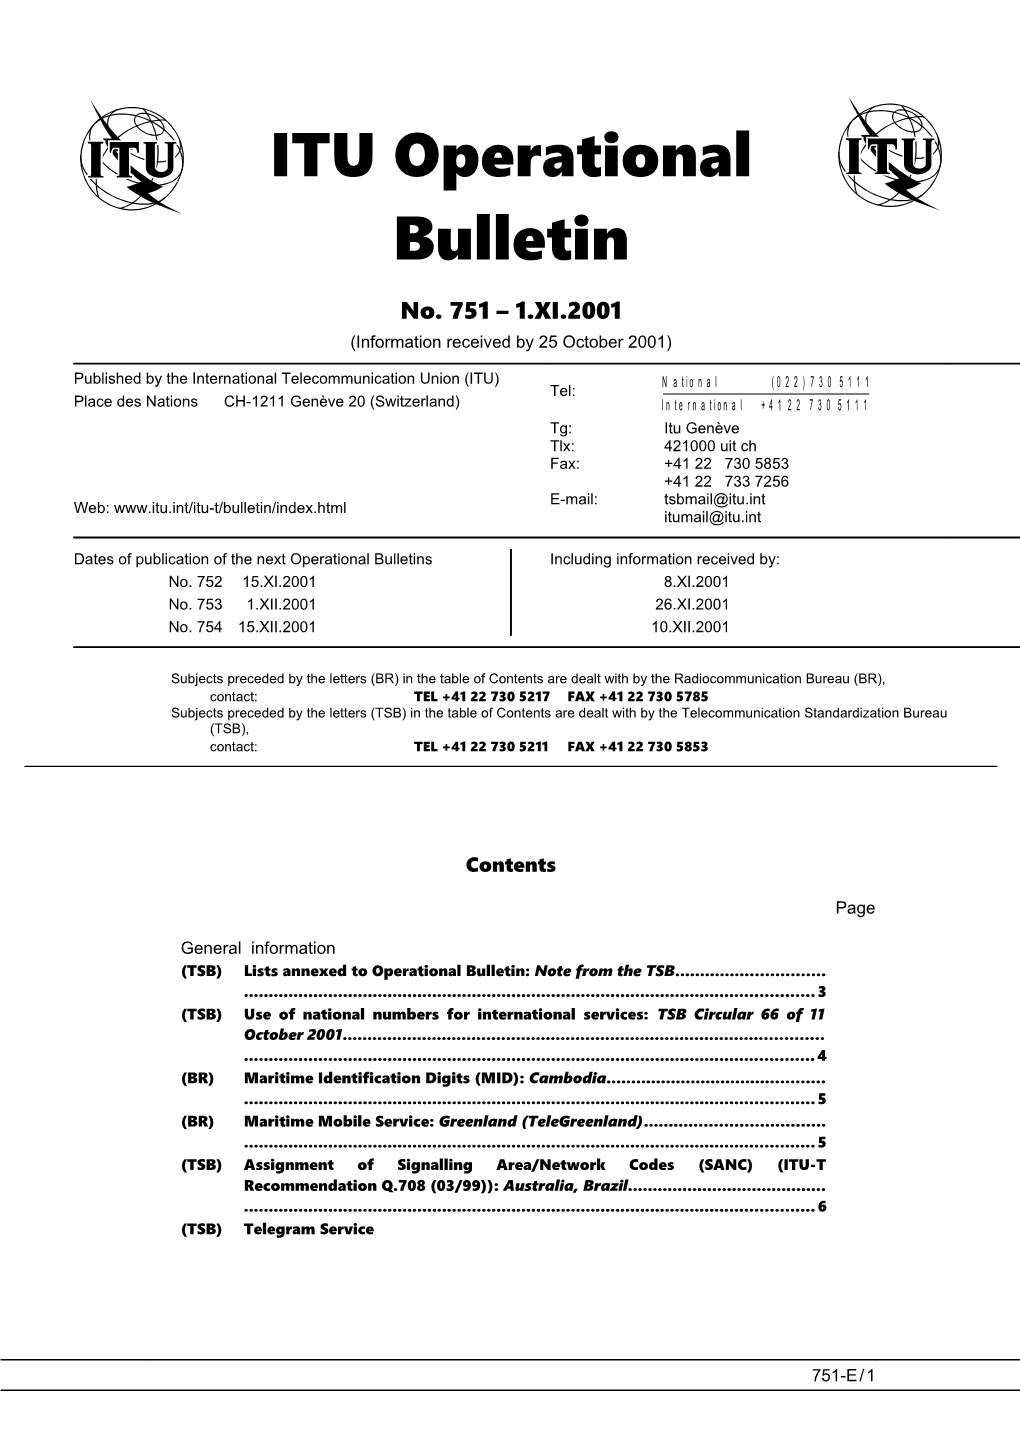 ITU Operational Bulletin 751 - 1.XI.2001